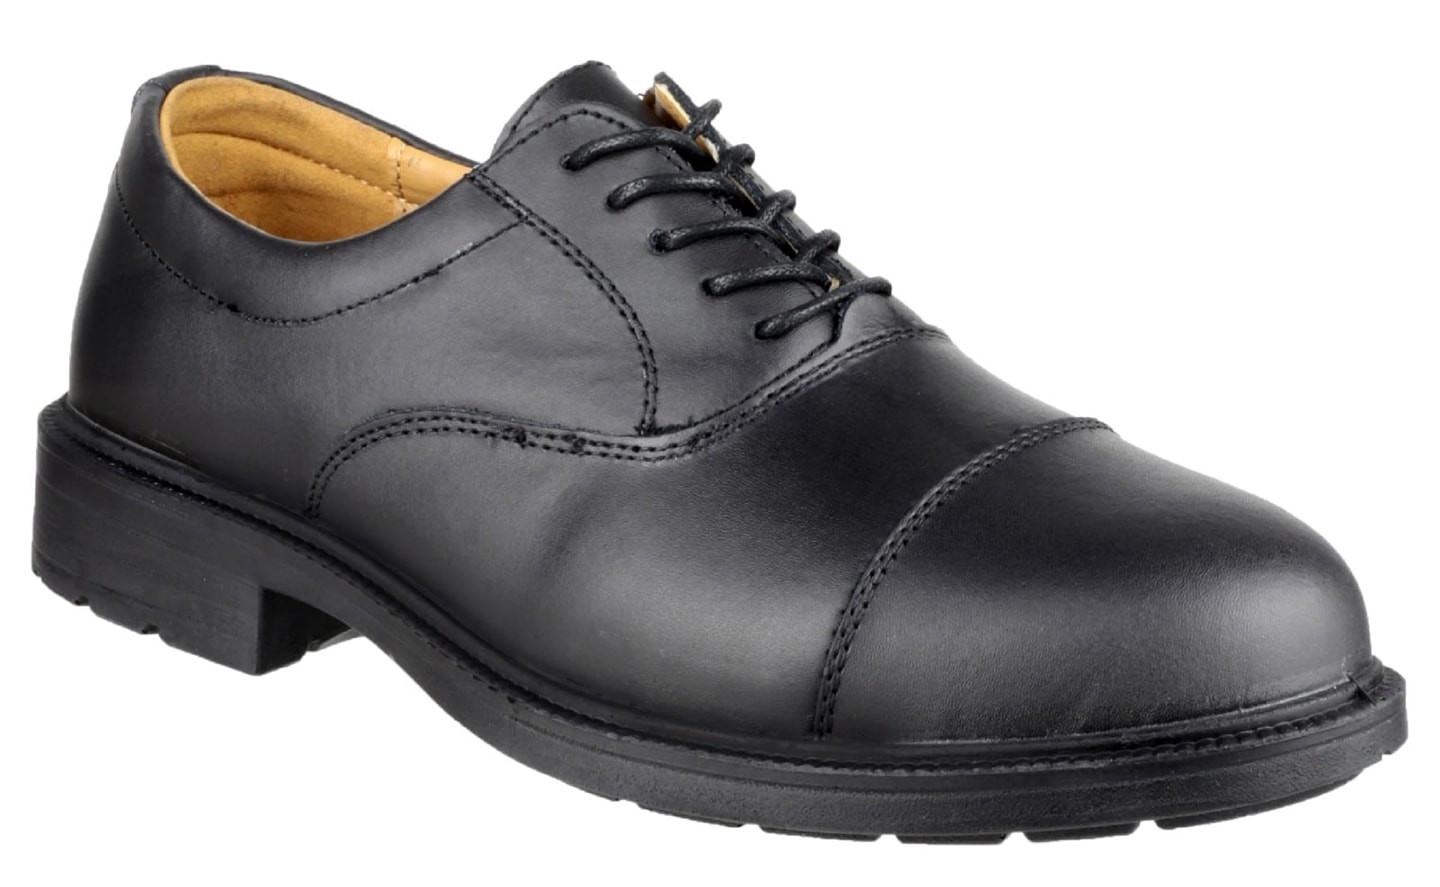 FS43 Work Safety Shoe